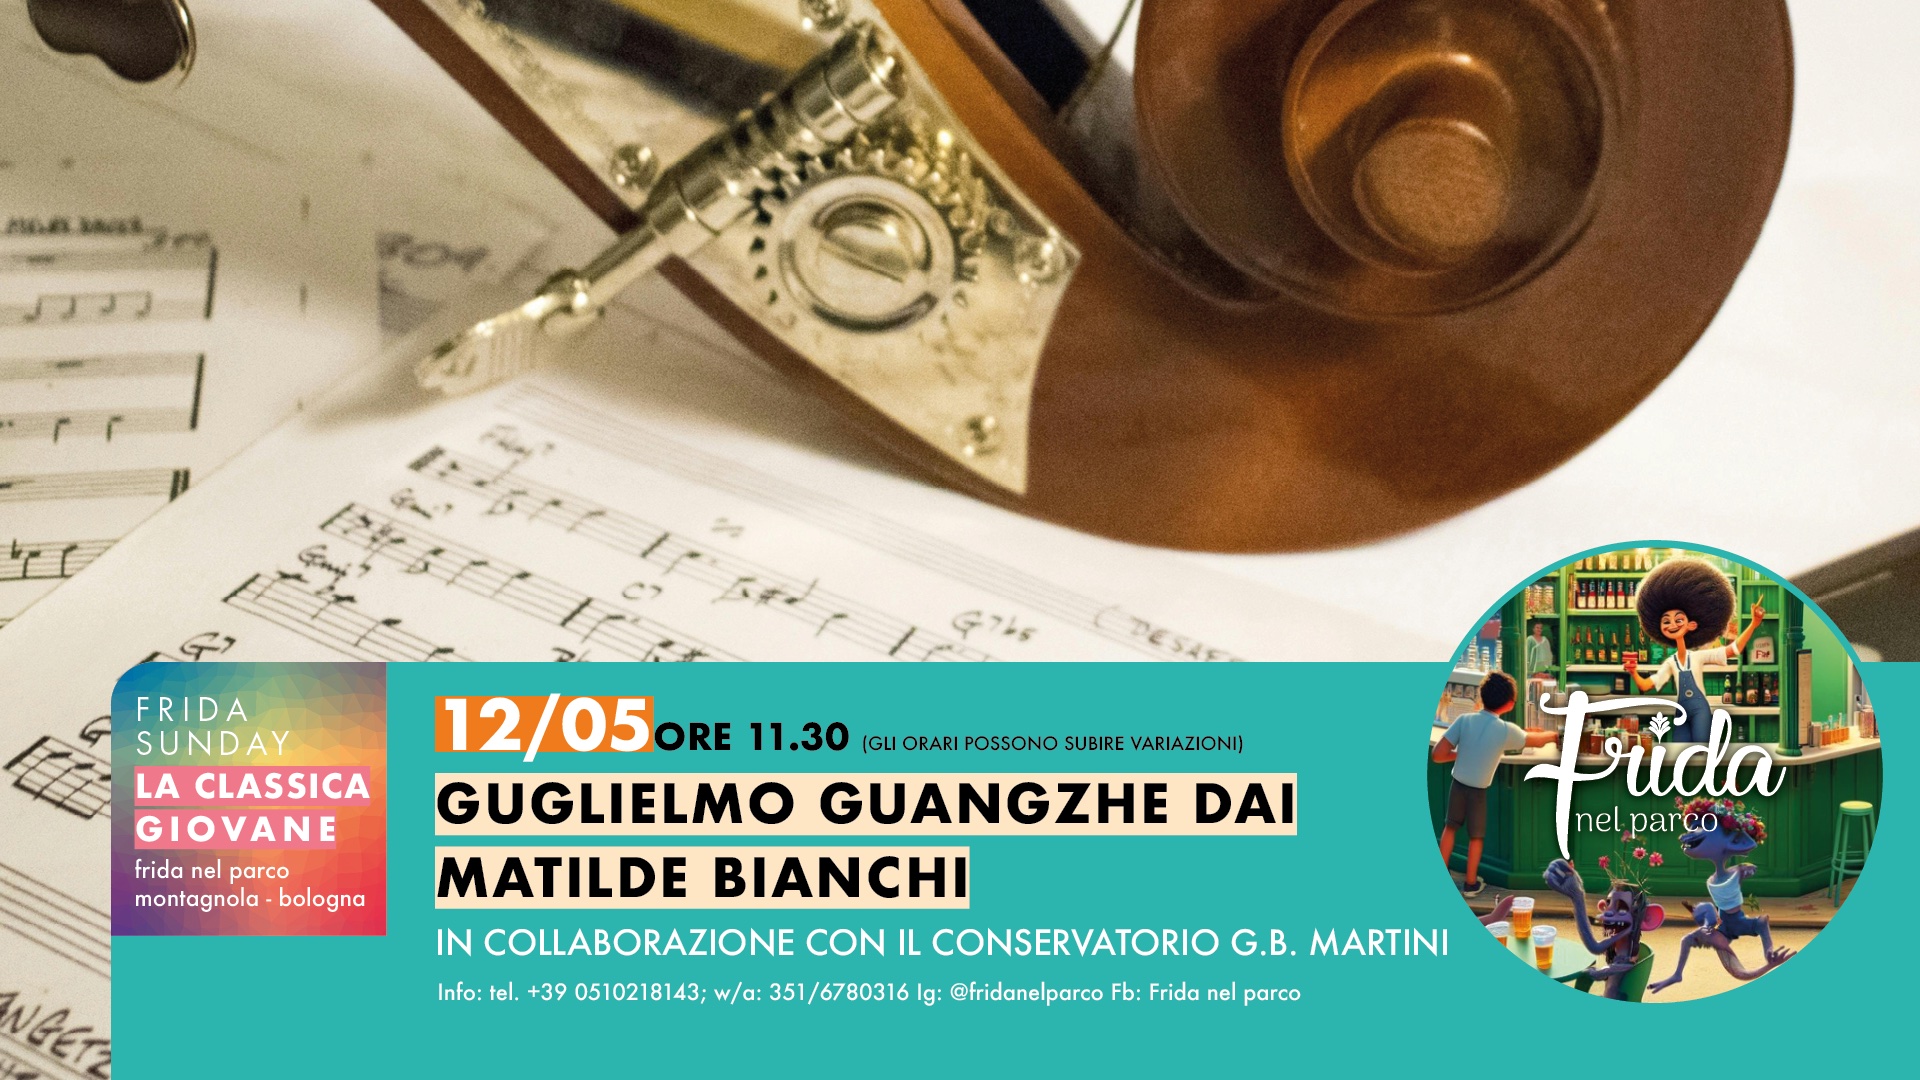 Classica matinee’, Giglielmo Guangzhe Dai e Matilde Bianchi in concerto